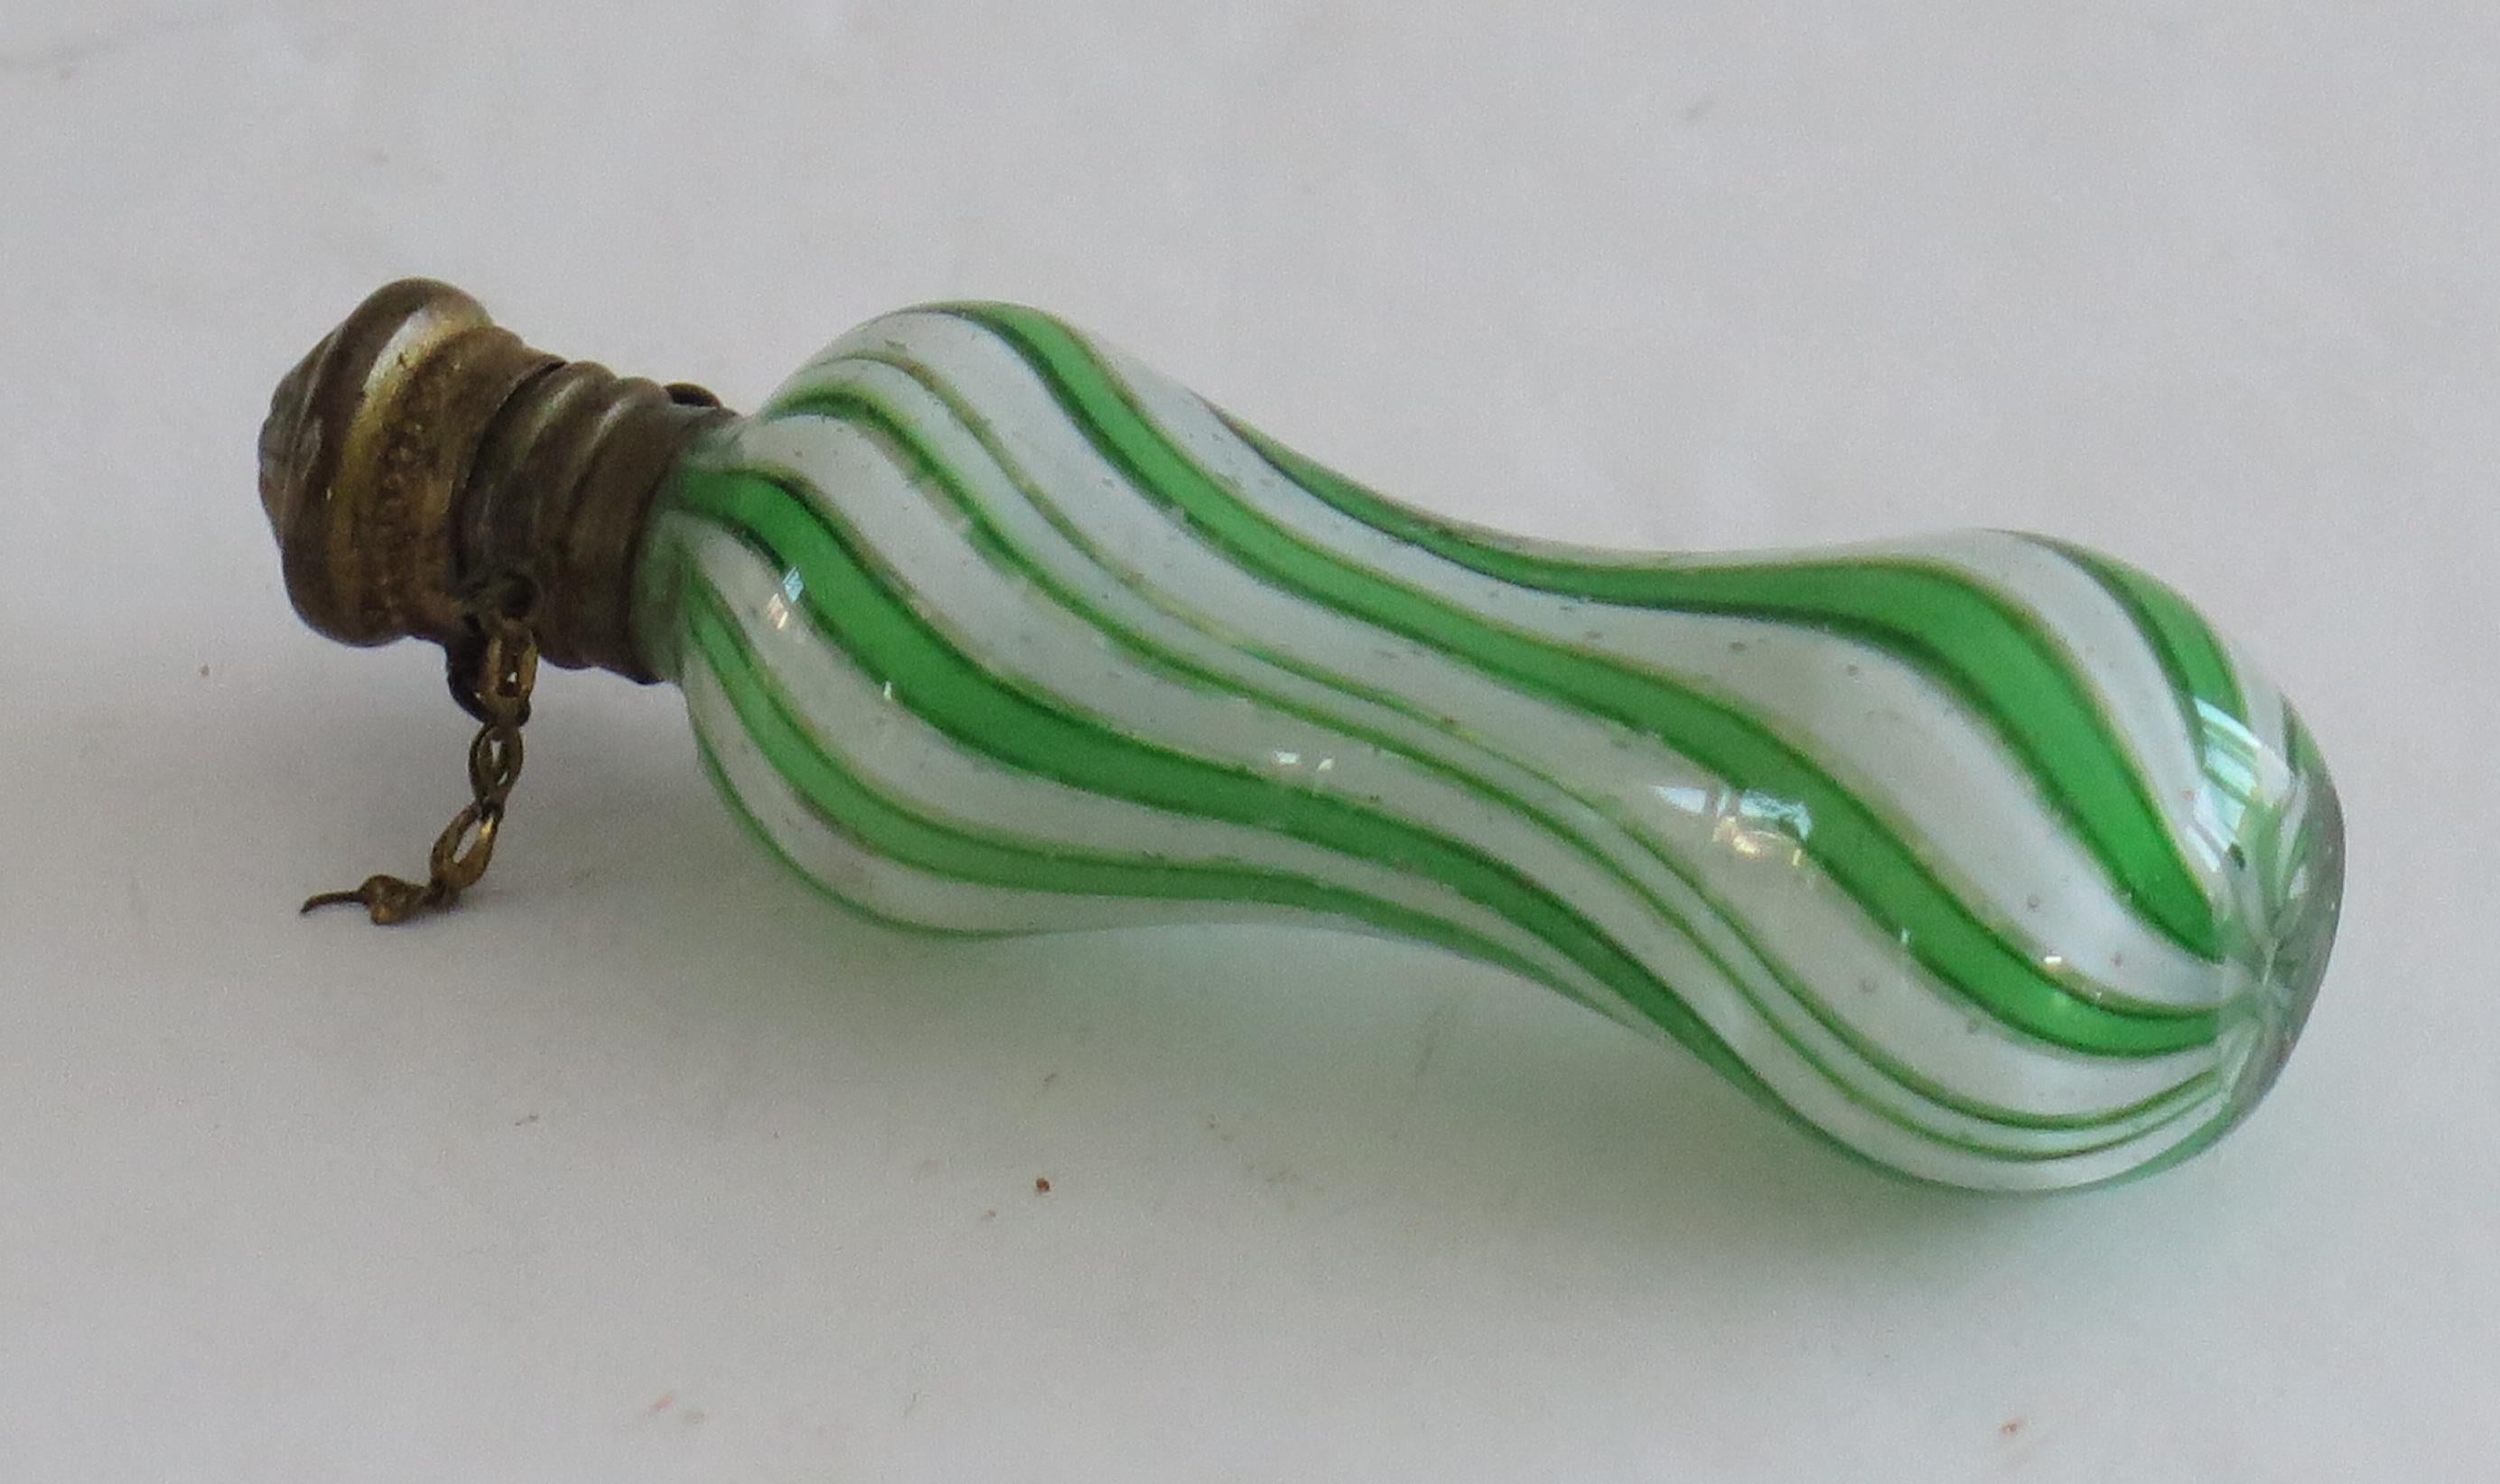 Dies ist eine antike Spirale Glas Parfüm oder Duft Flasche, die wir zu Clichy, Frankreich, um 1850 gemacht Attribut.

Der Flakon ist aus grünem und weißem Latticino mit wirbelnden oder spiralförmigen Streifen (Canes) in überfangenem Klarglas mit